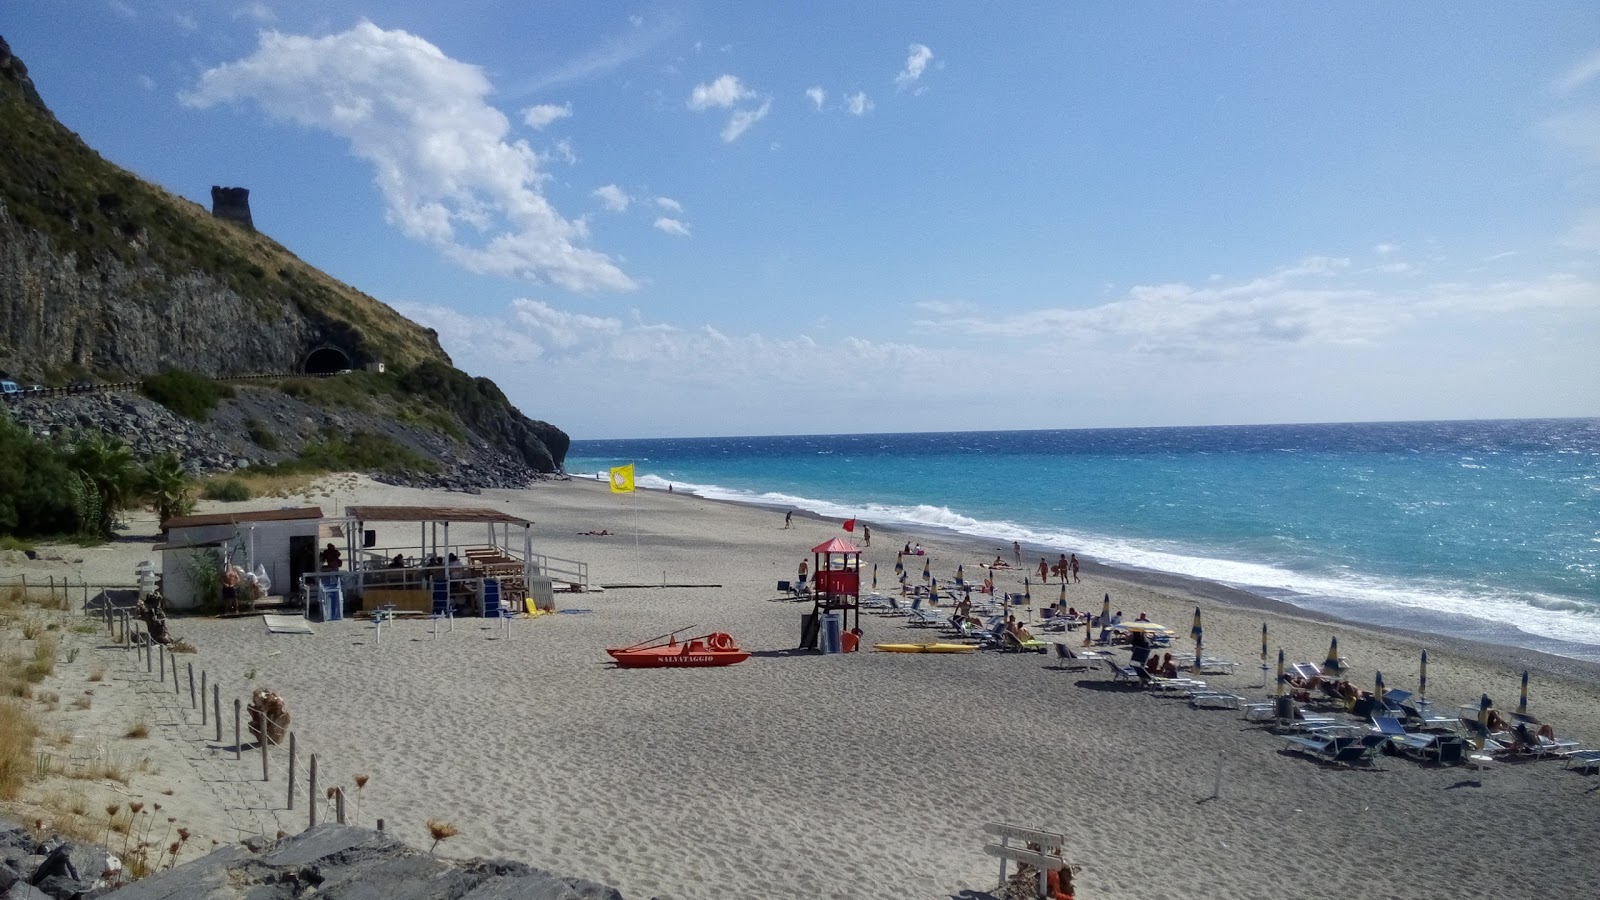 Fotografija Spiaggia del Troncone nahaja se v naravnem okolju